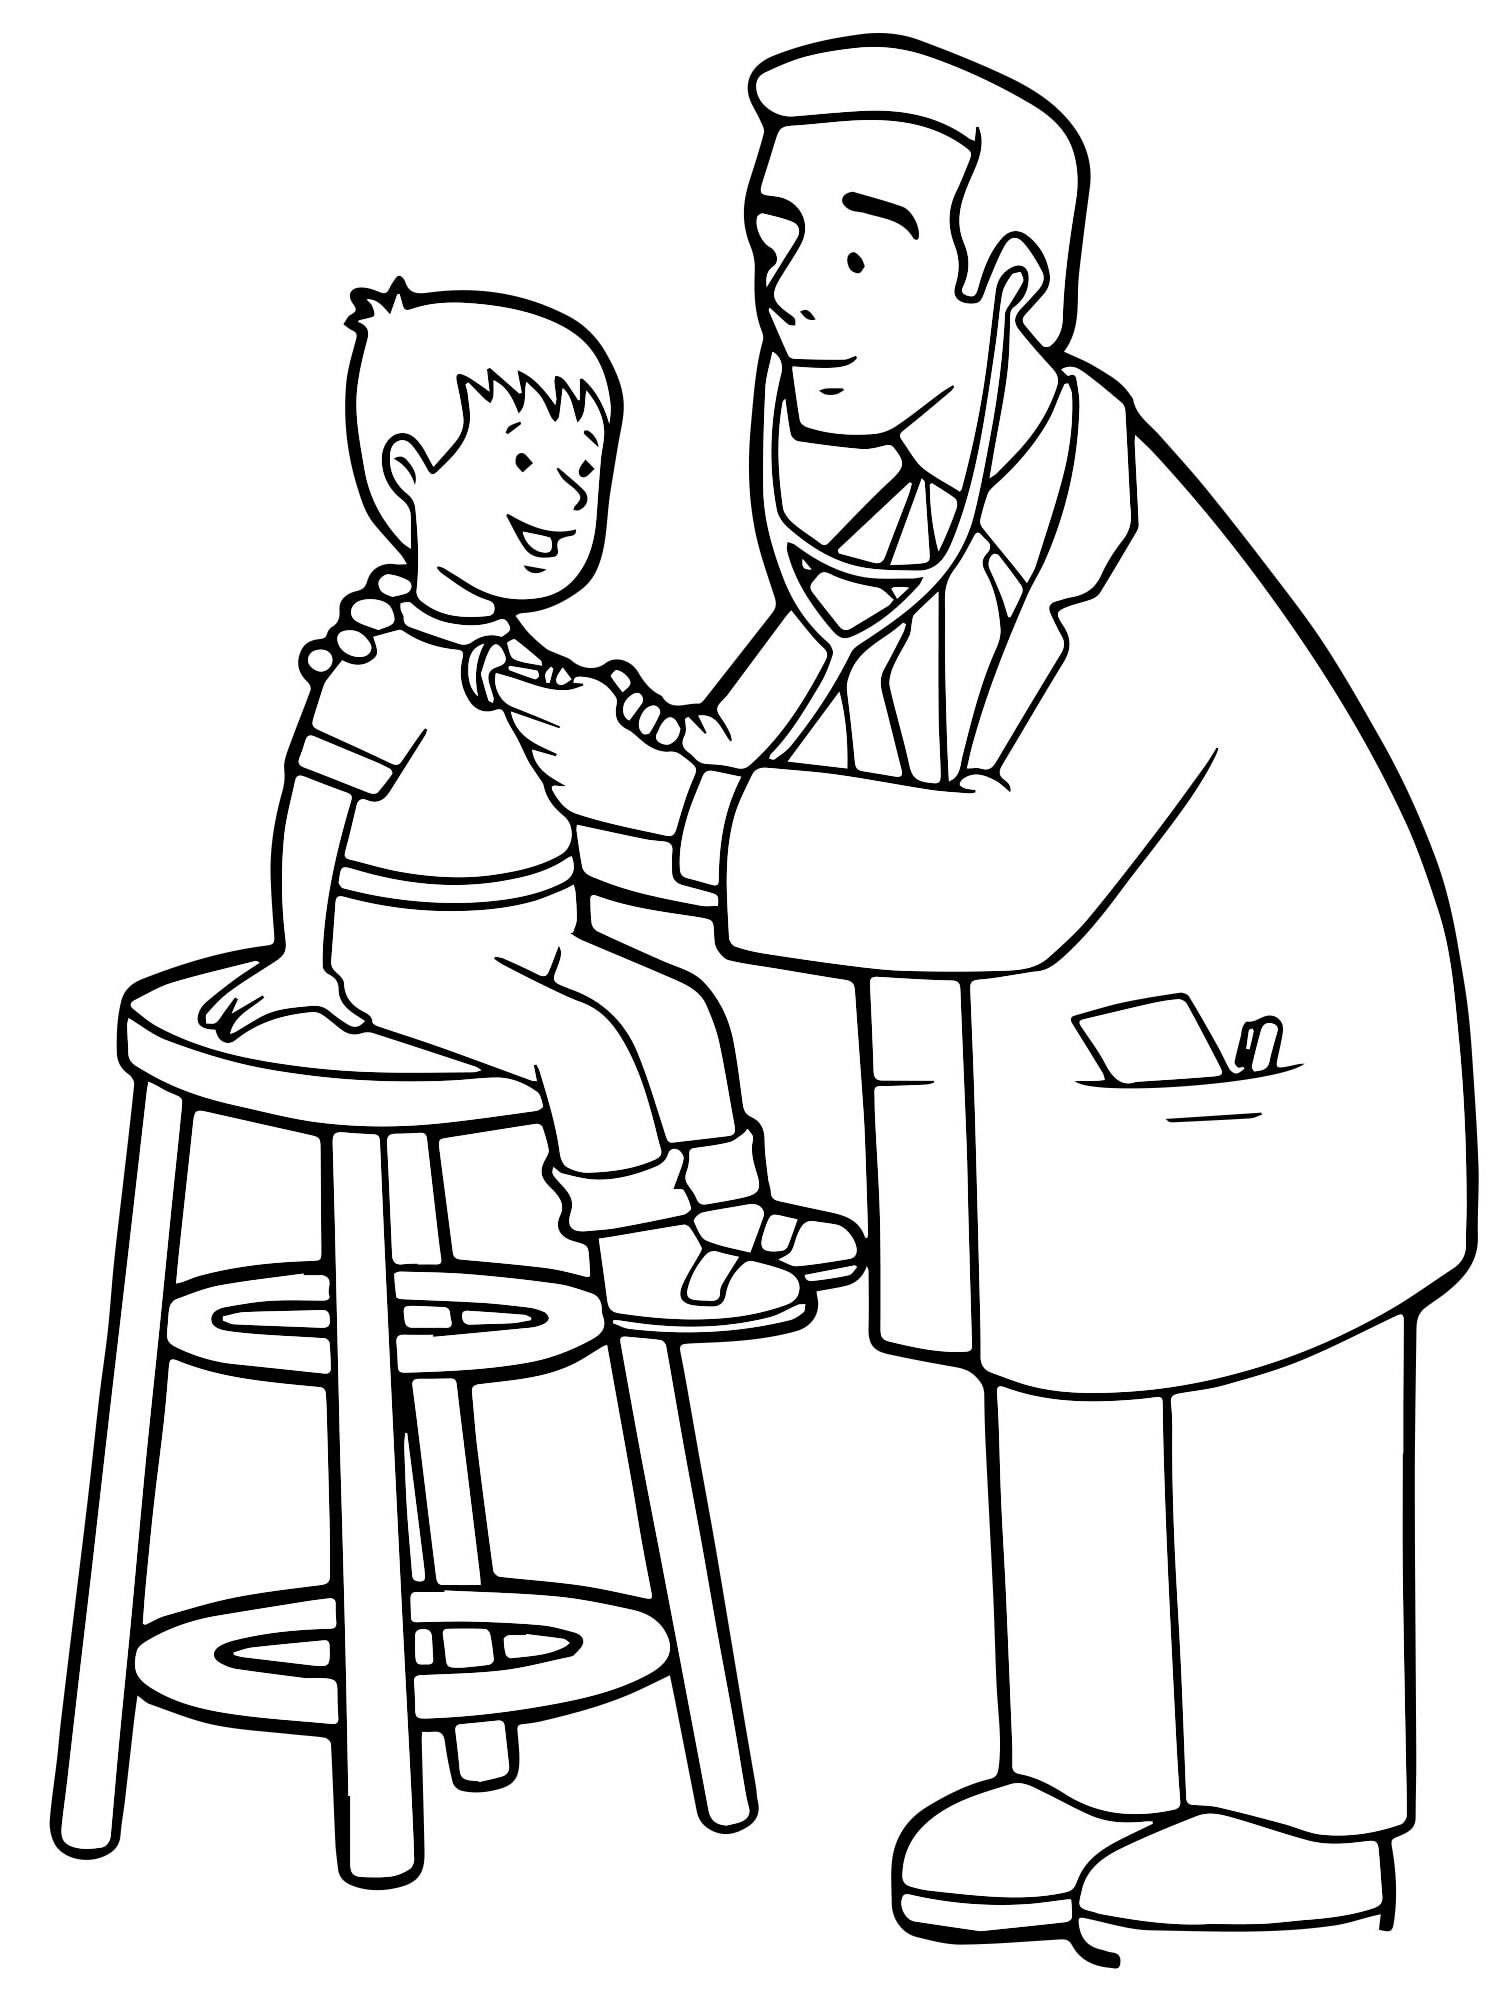 Разукрашка профессии доктор для детей